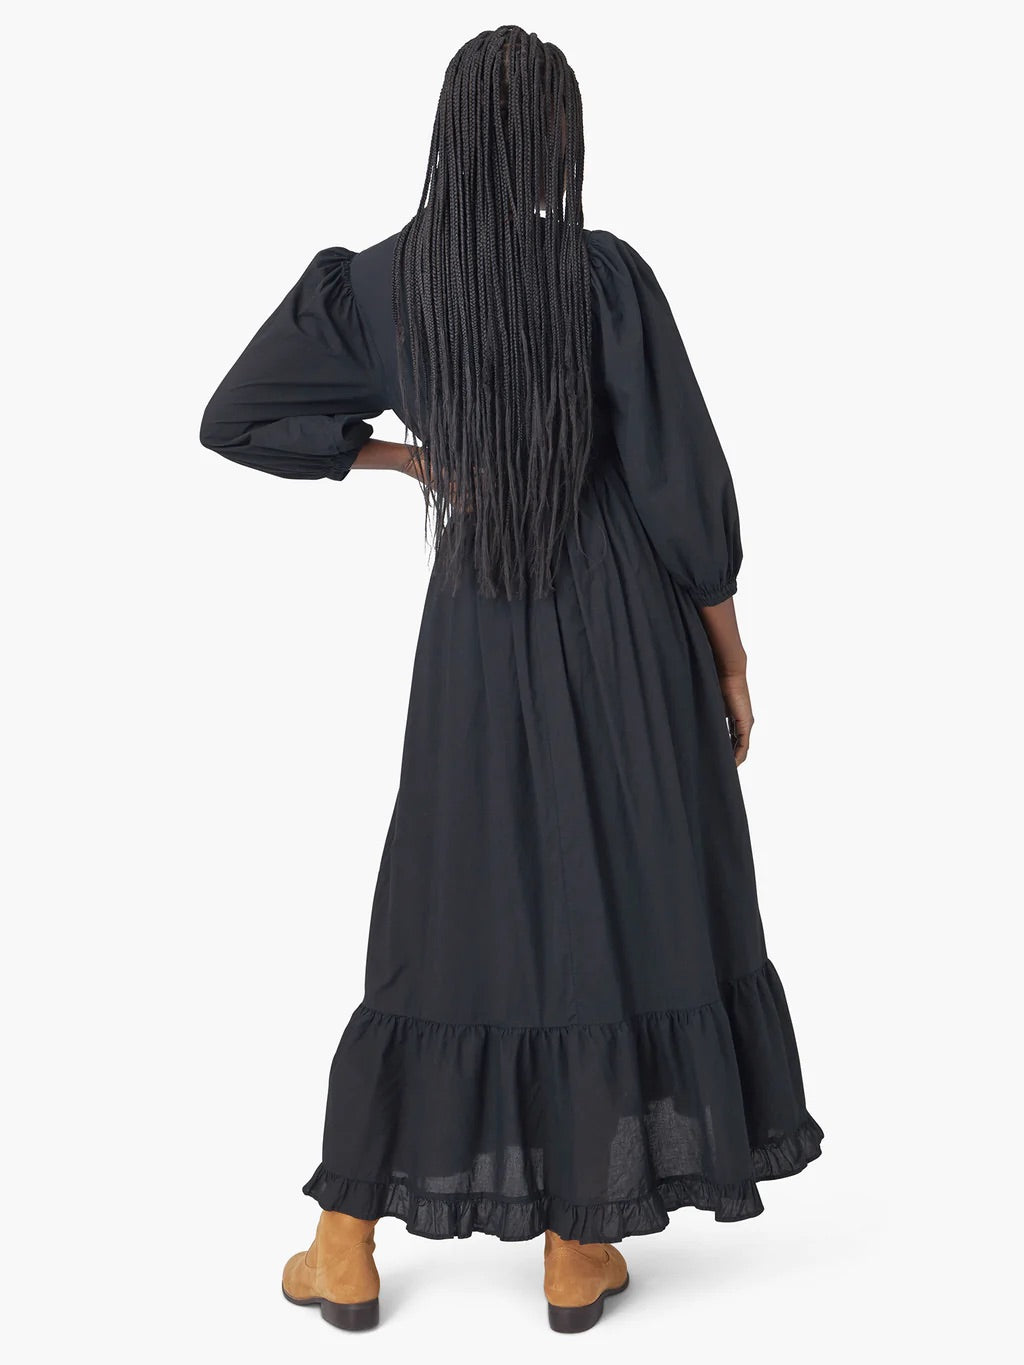 XIRENA Ashlyn Dress in Black